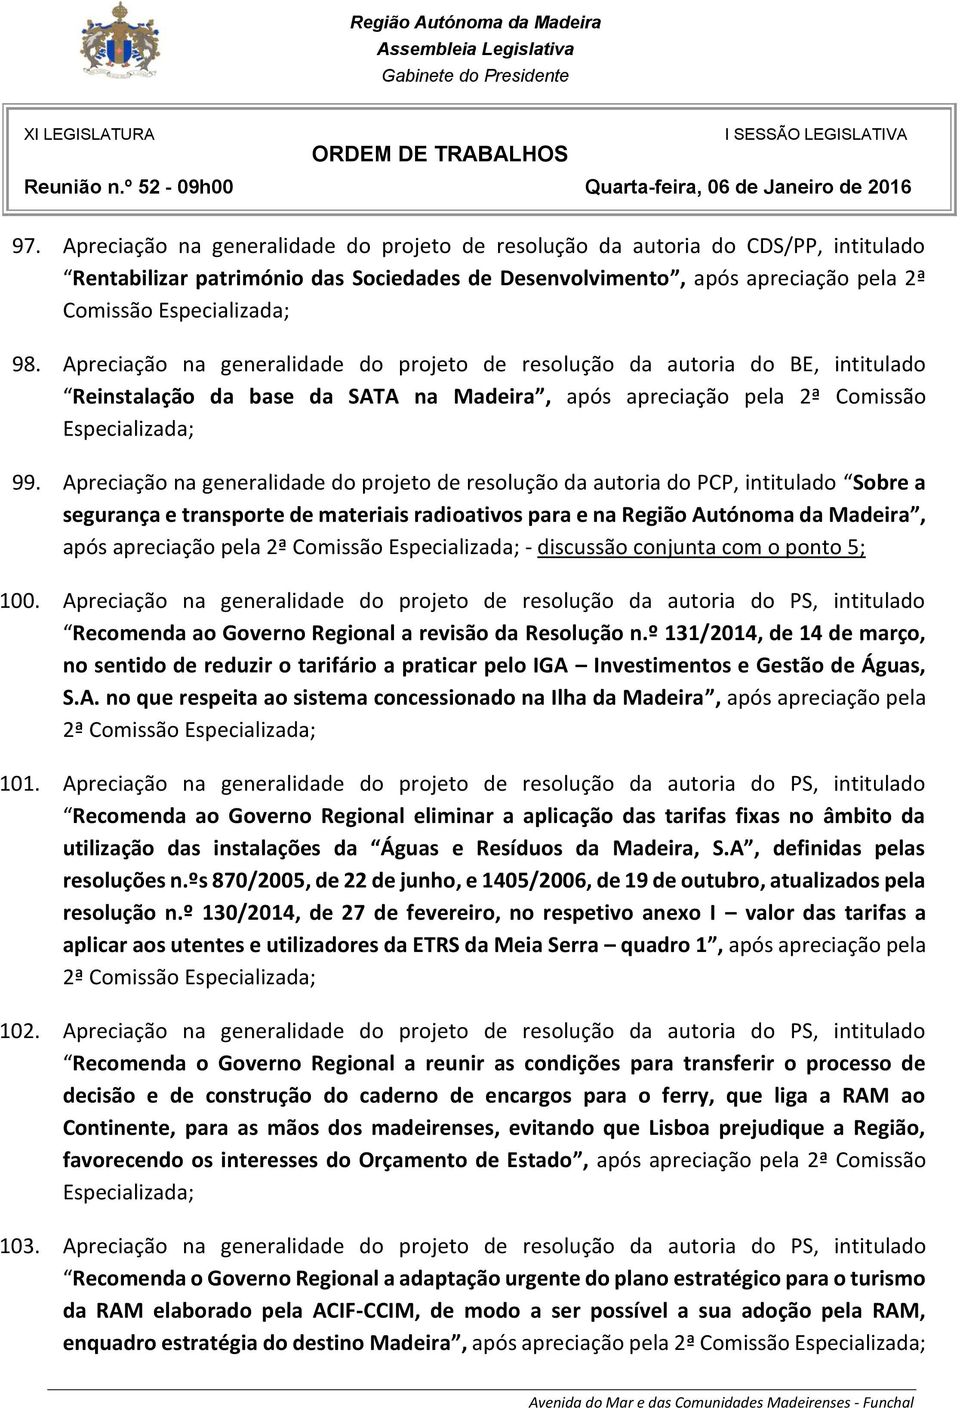 Apreciação na generalidade do projeto de resolução da autoria do PCP, intitulado Sobre a segurança e transporte de materiais radioativos para e na Região Autónoma da Madeira, após apreciação pela 2ª